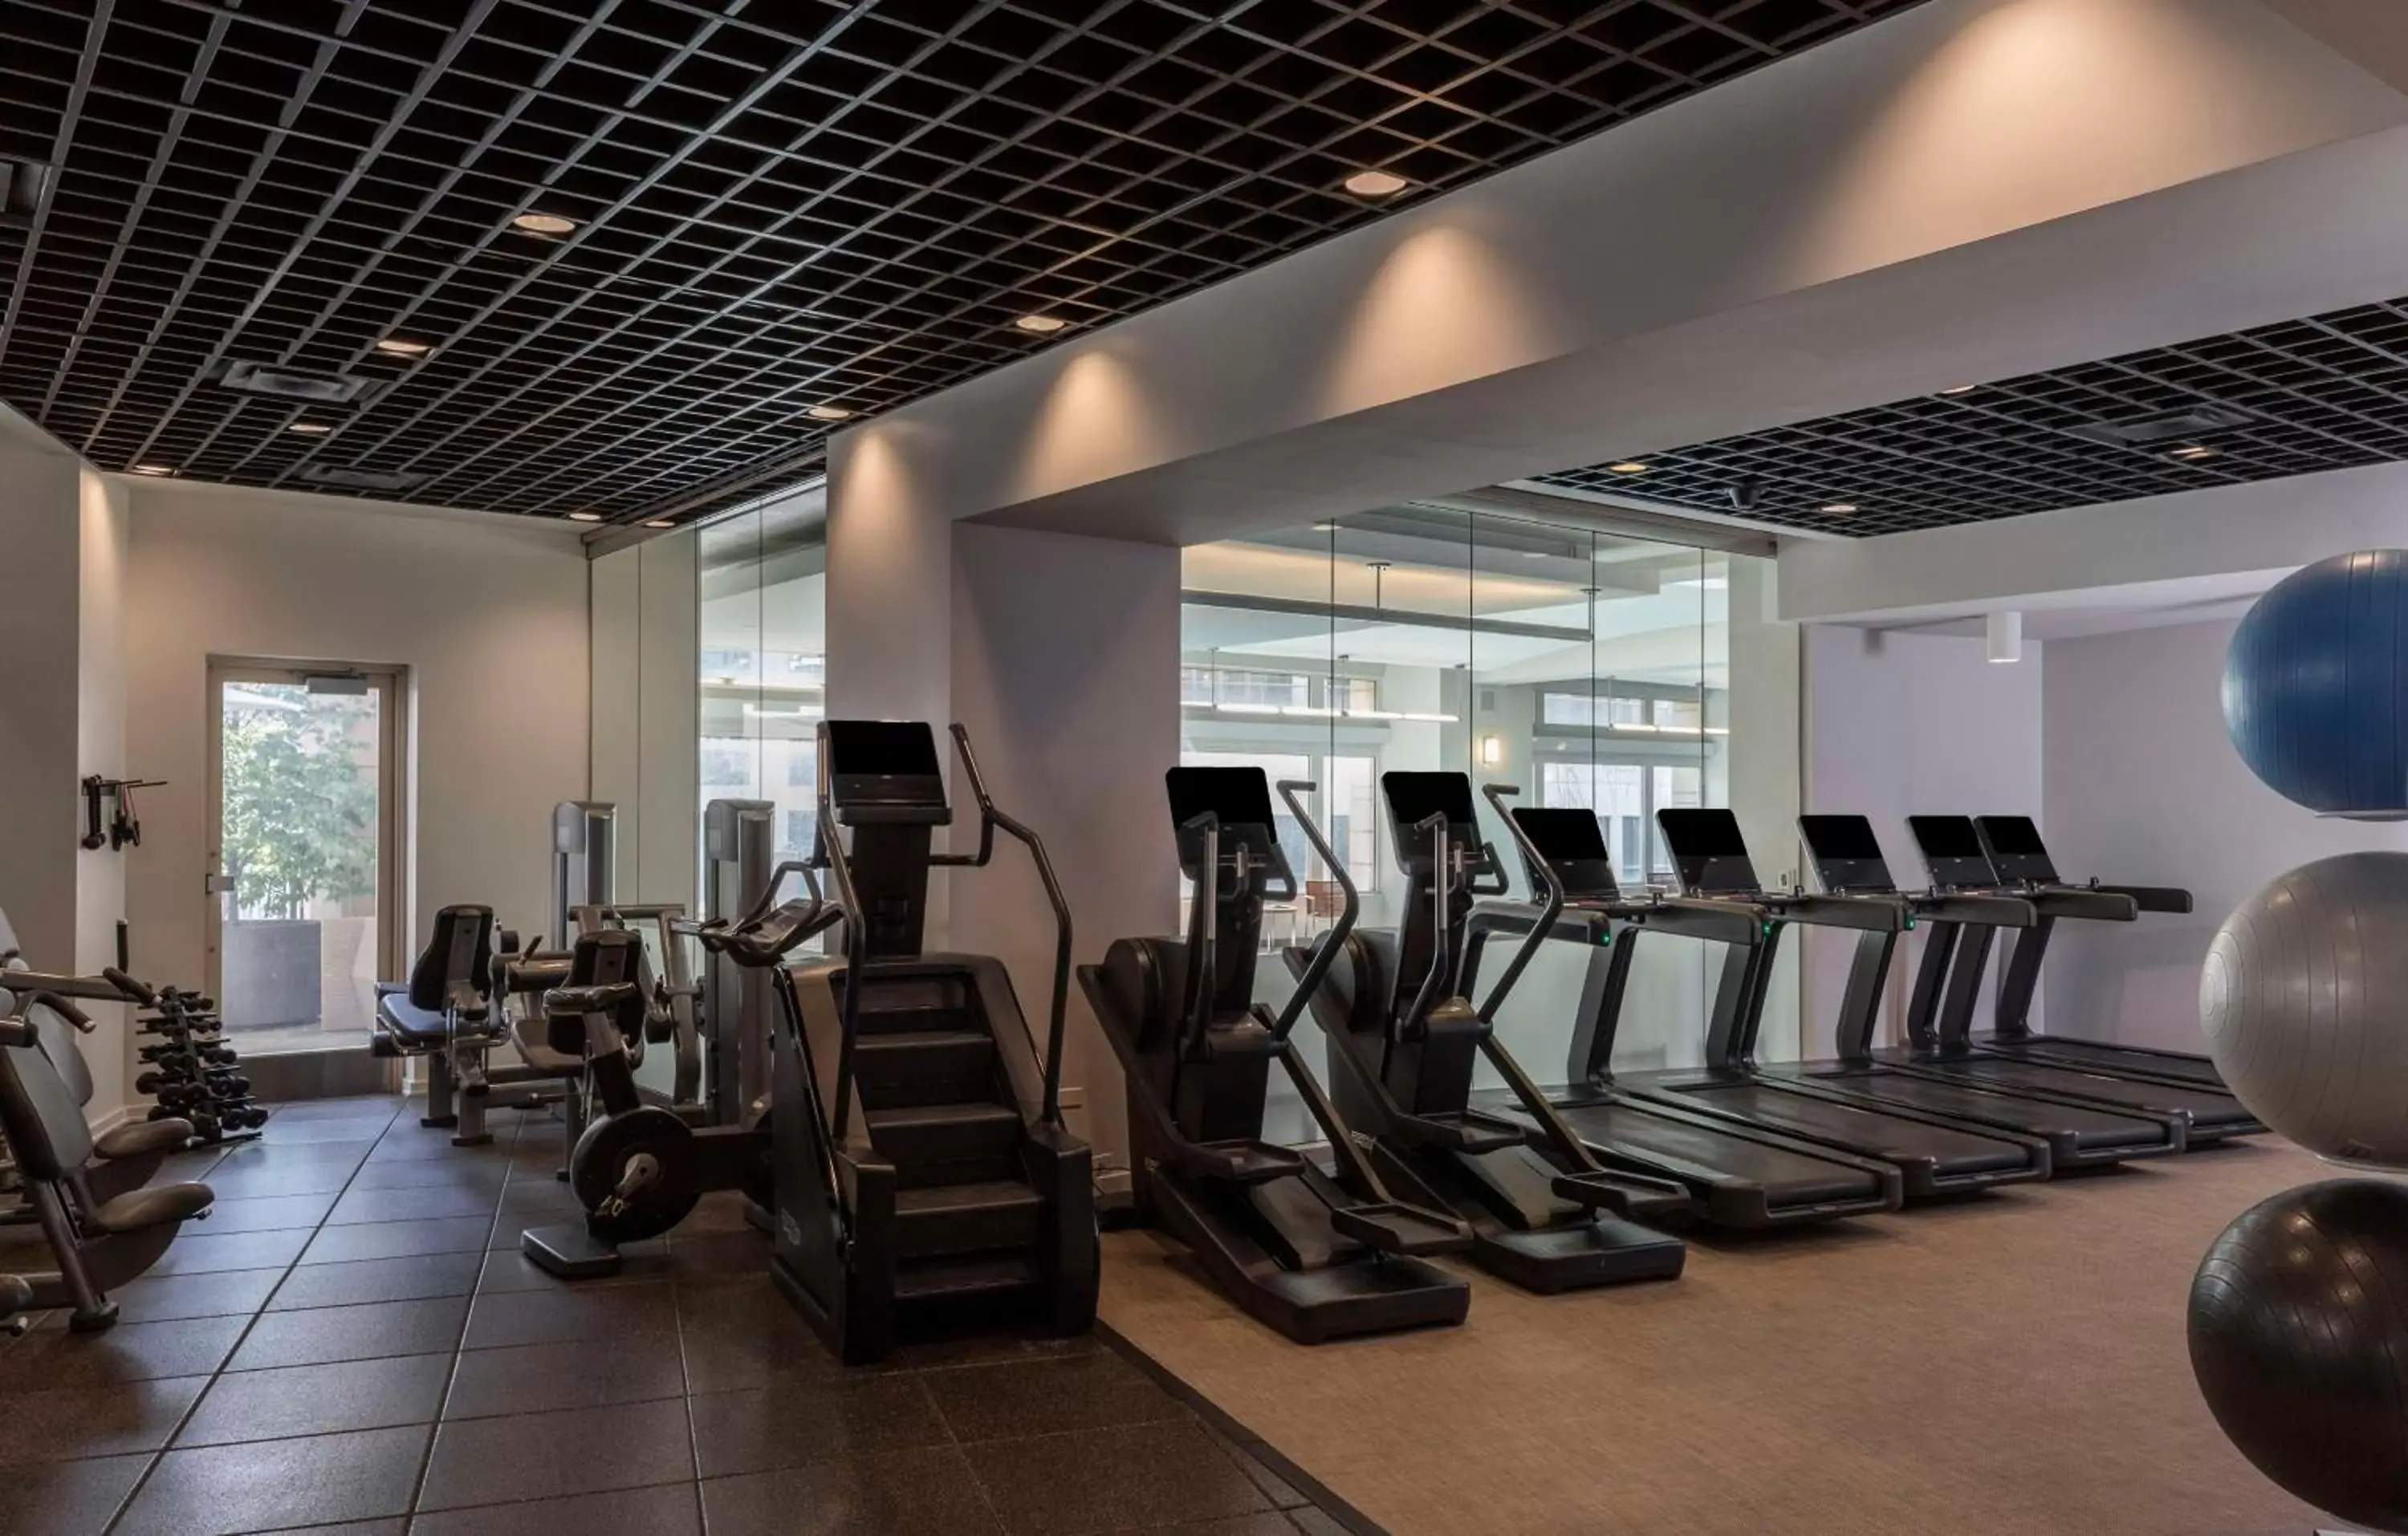 Fitness centre/facilities, Fitness Center/Facilities in Park Hyatt Chicago